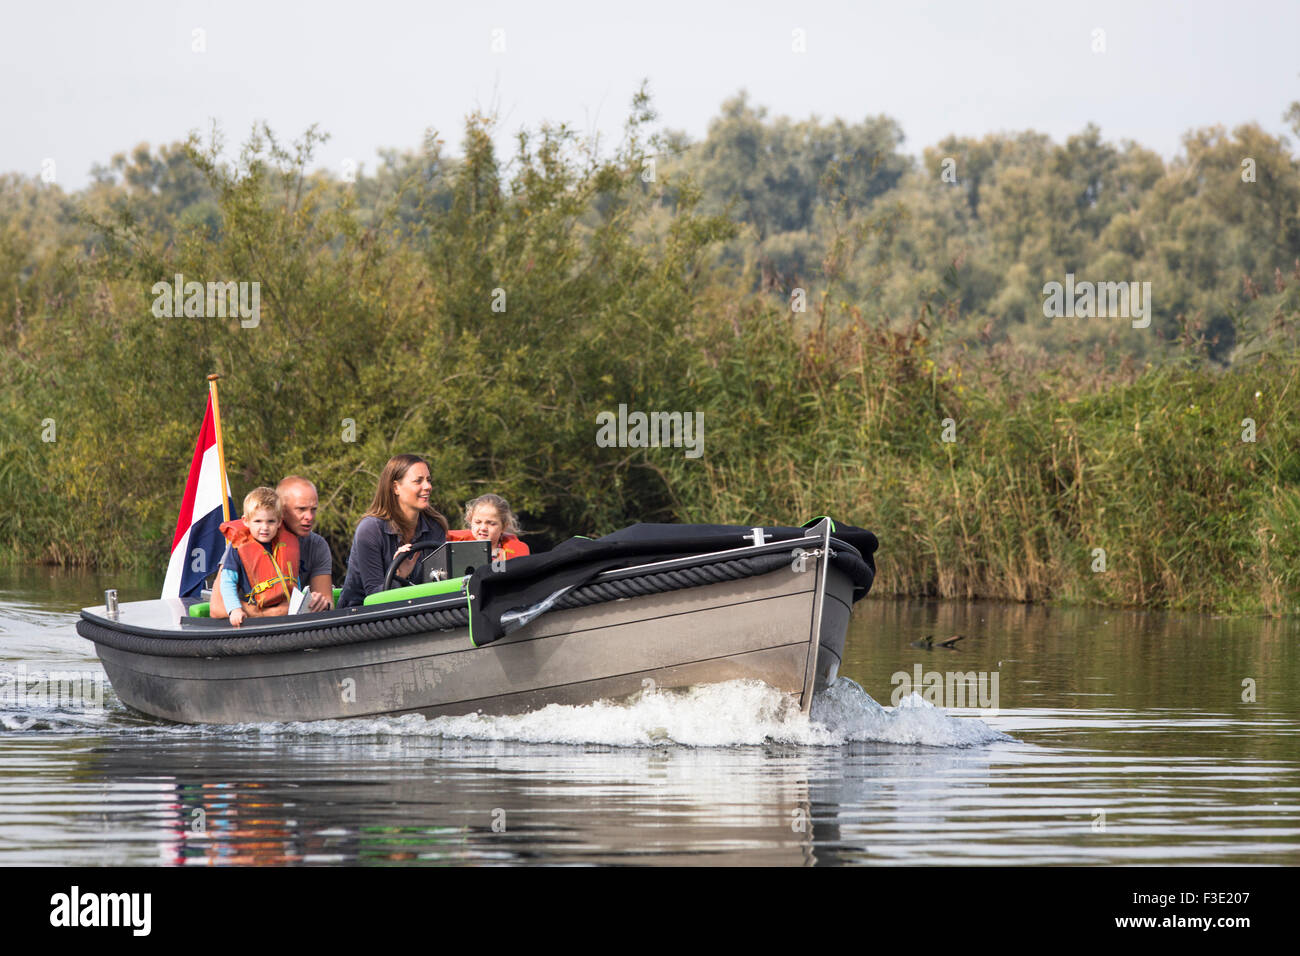 Jeune famille voile a louer bateau dans le parc national Biesbosch', 'zone humide zone natura 2000 aux Pays-Bas Banque D'Images